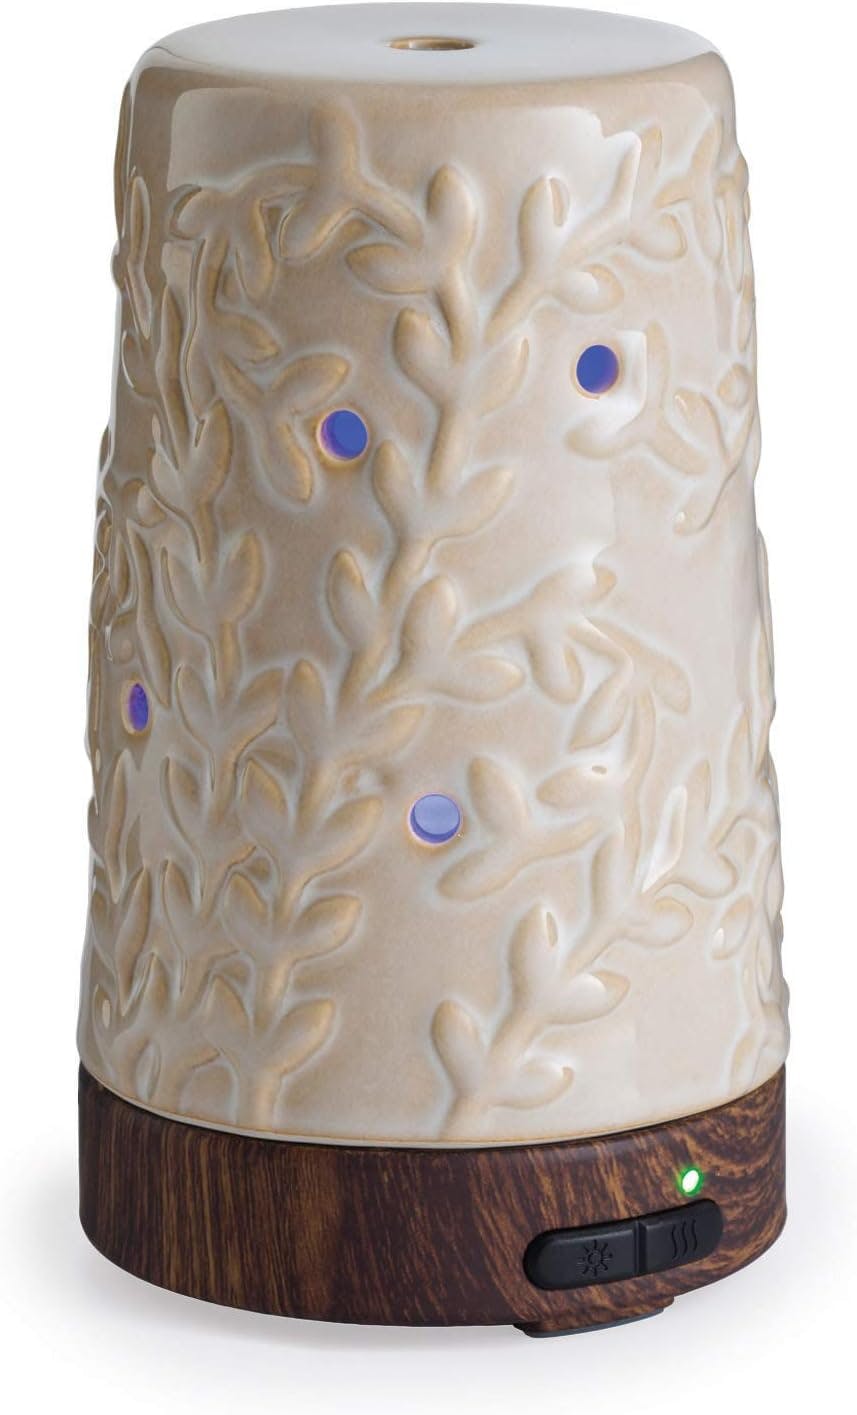 Flourish Cream Ceramic Essential Oil Diffuser with LED Lights, 100 mL